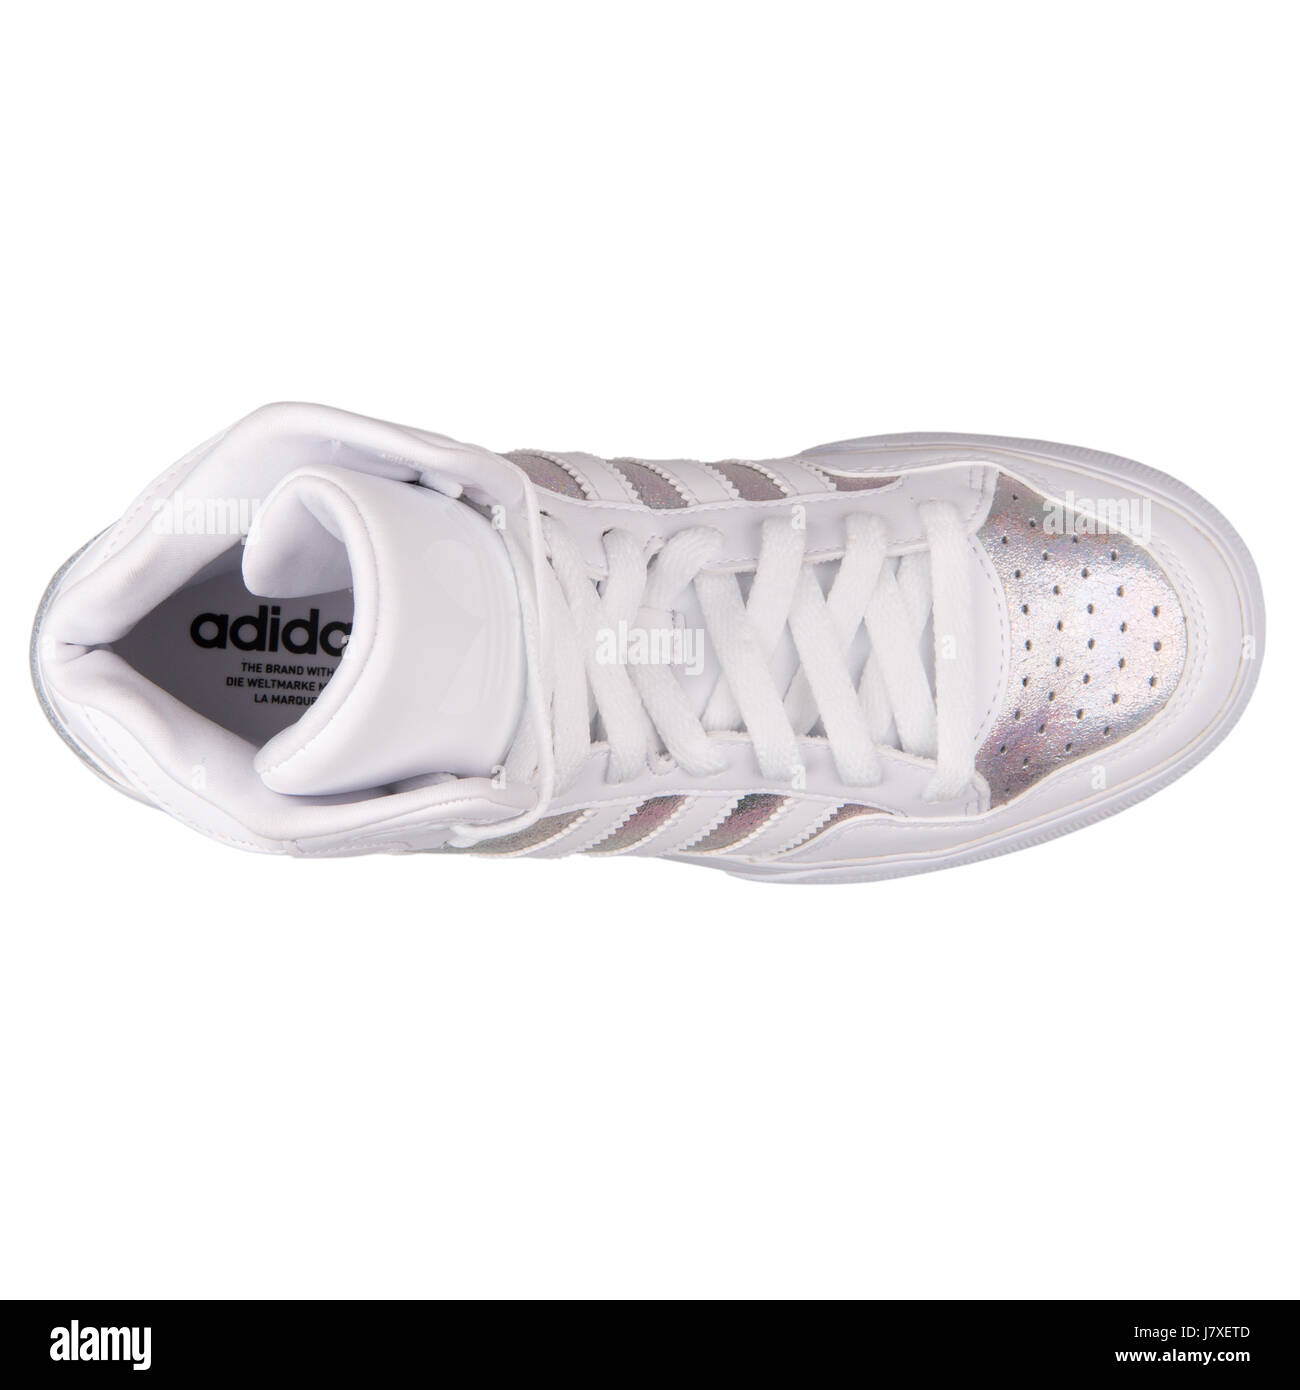 Adidas Extaball W Mujer Blanco iridiscente con cuero metalizado plata  Sneakers - S77398 Fotografía de stock - Alamy